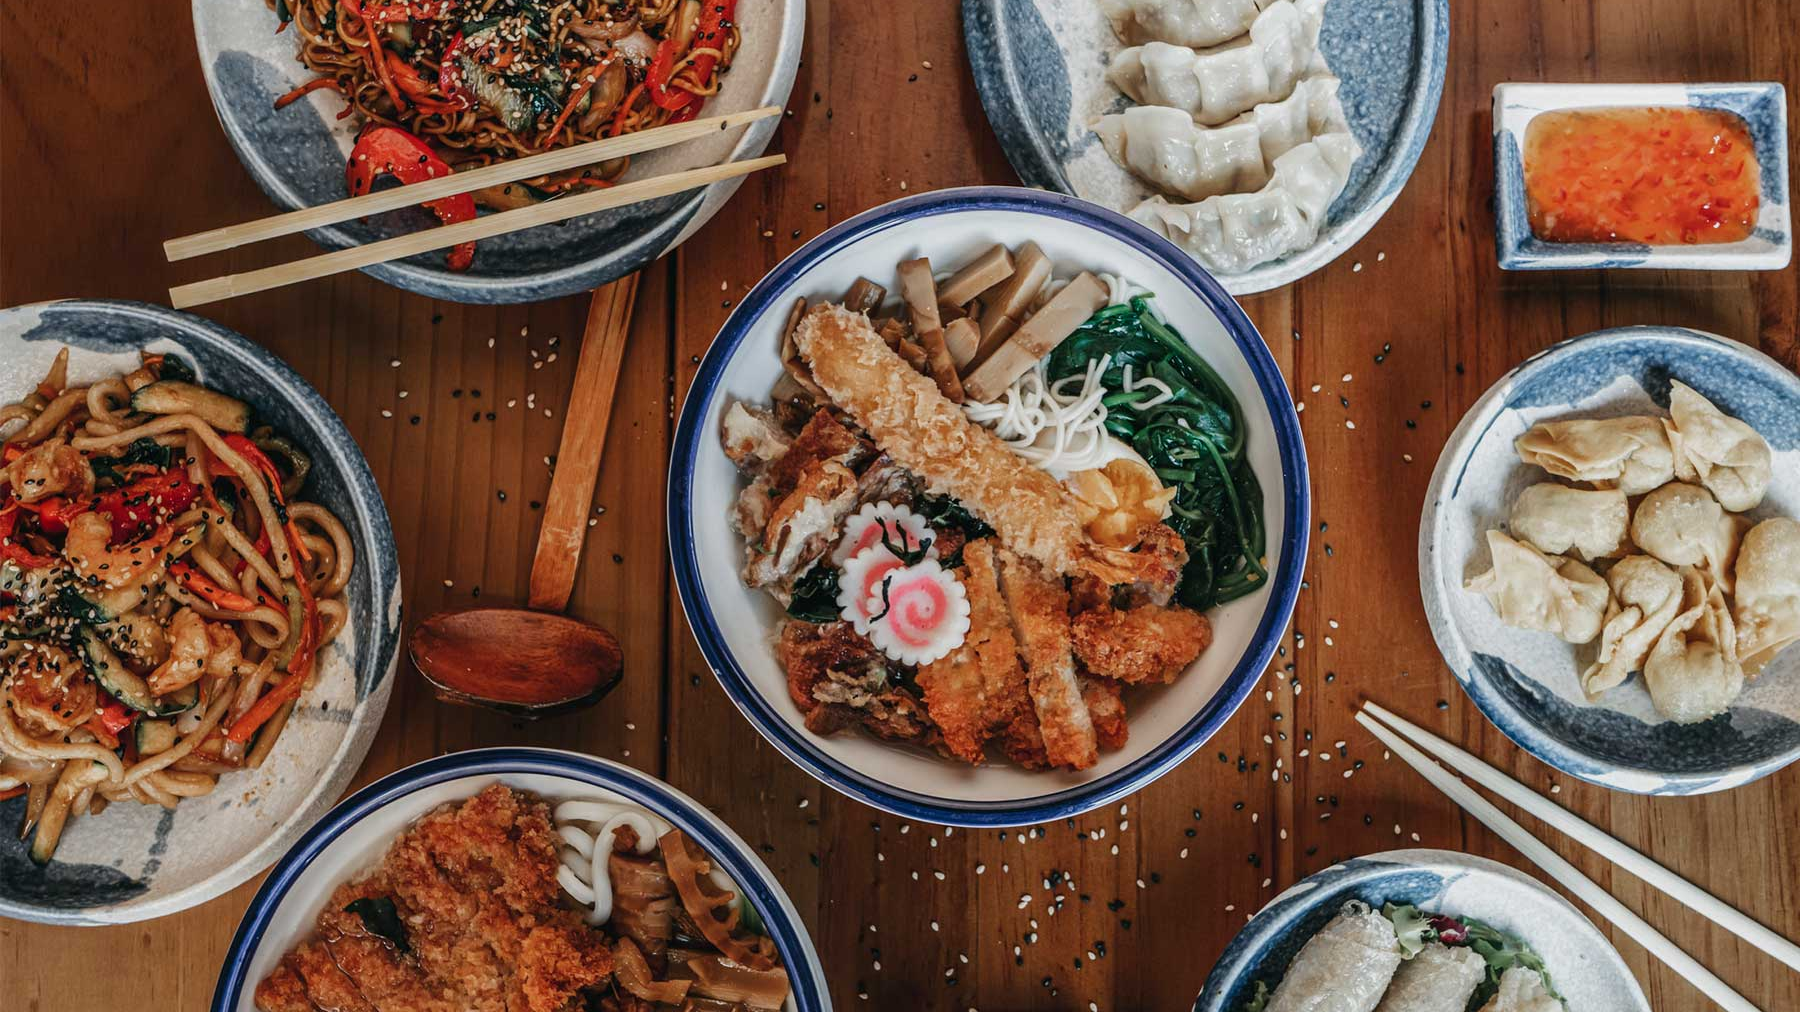 Comida japonesa: mucho más que ramen y sushi